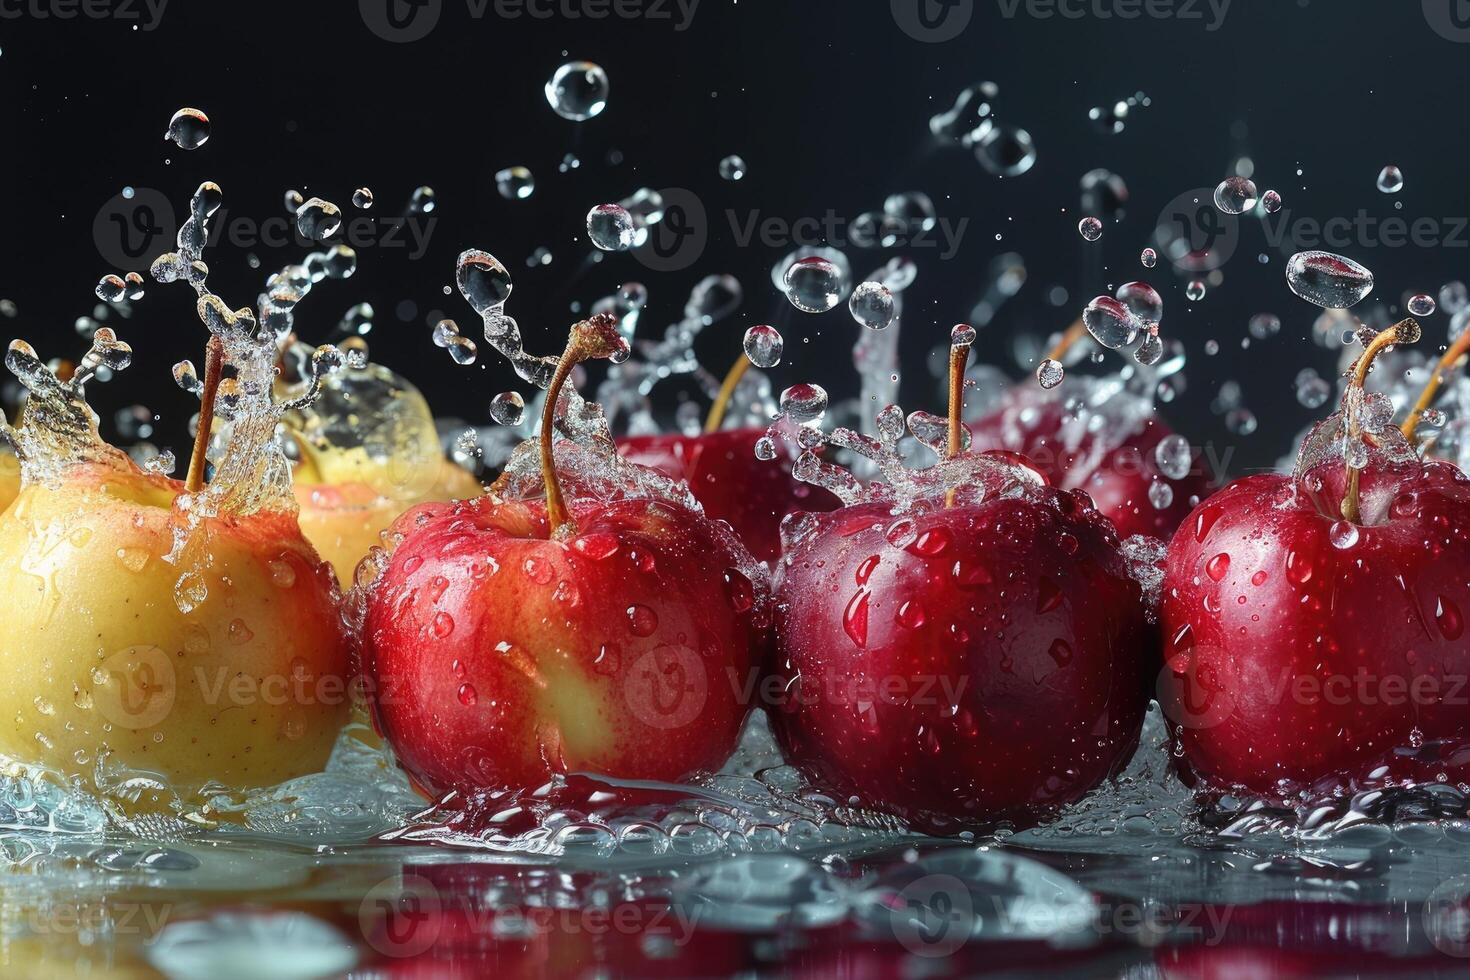 un Fresco frutas o vegetales con agua gotas creando un chapoteo publicidad comida fotografía foto